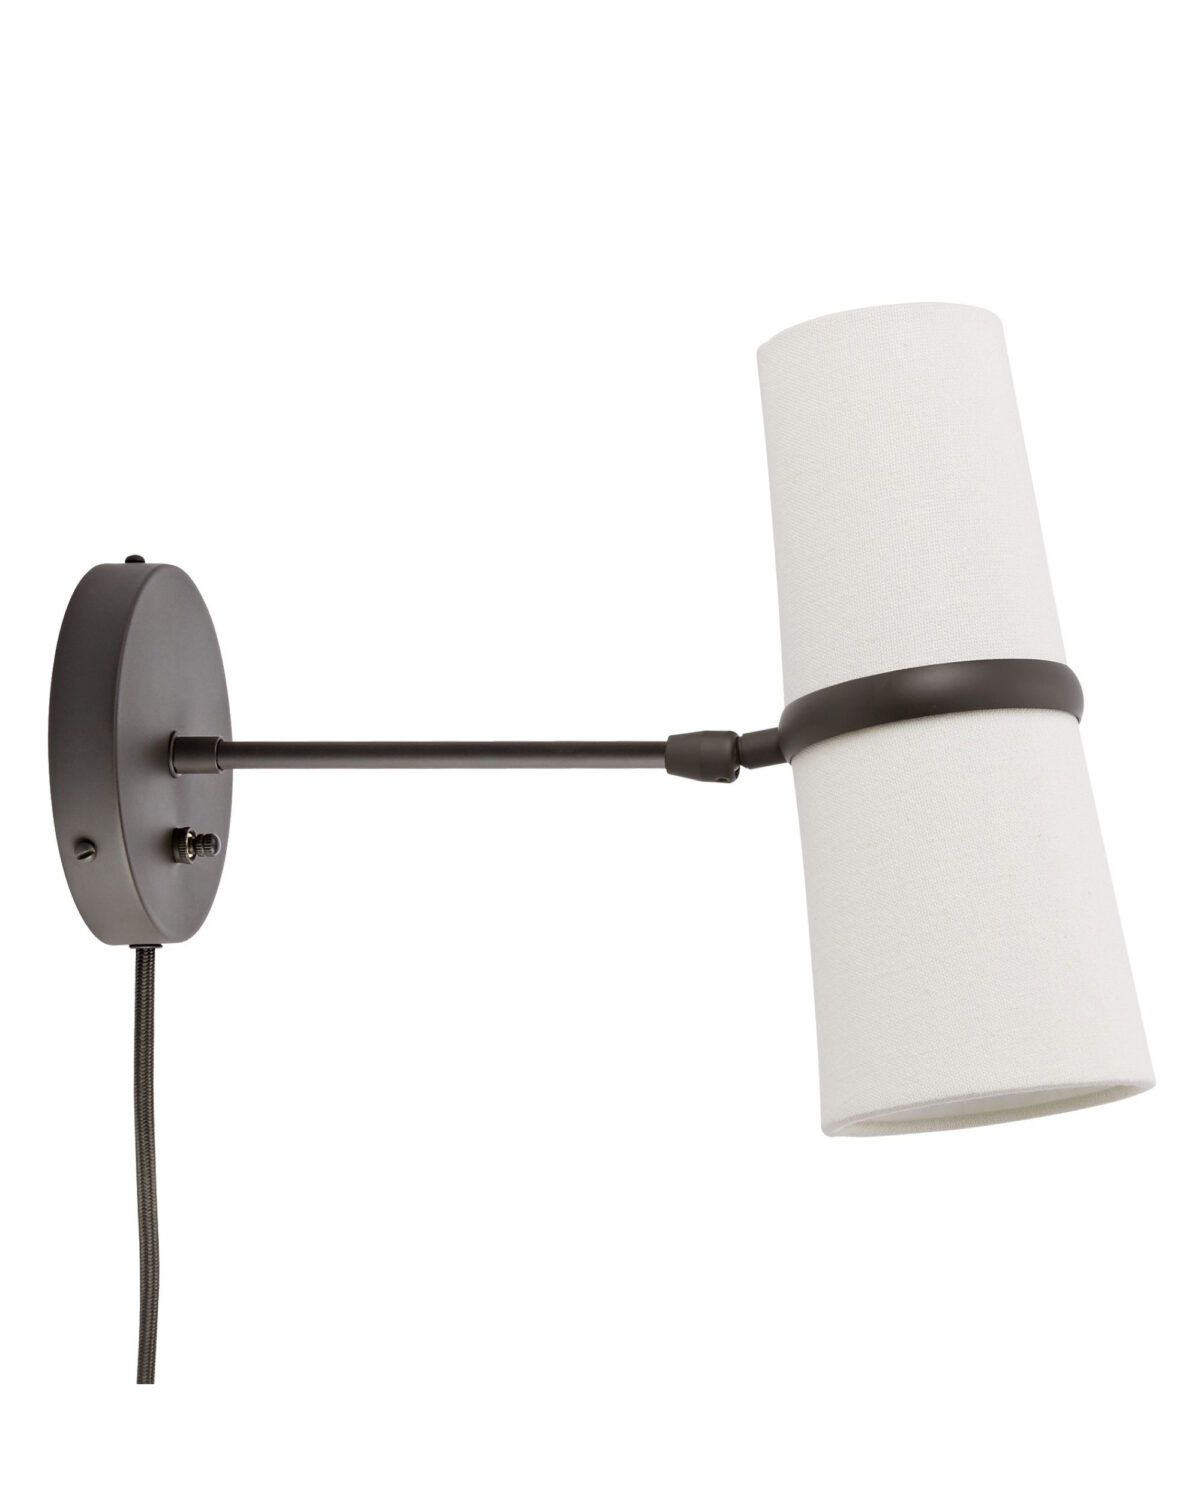 Удлиненное чёрное бра "Флемиш" с проводом - это настенный светильник, который выполнен в стиле "Мид-сенчури", имеет конусообразный белый тканевый абажур